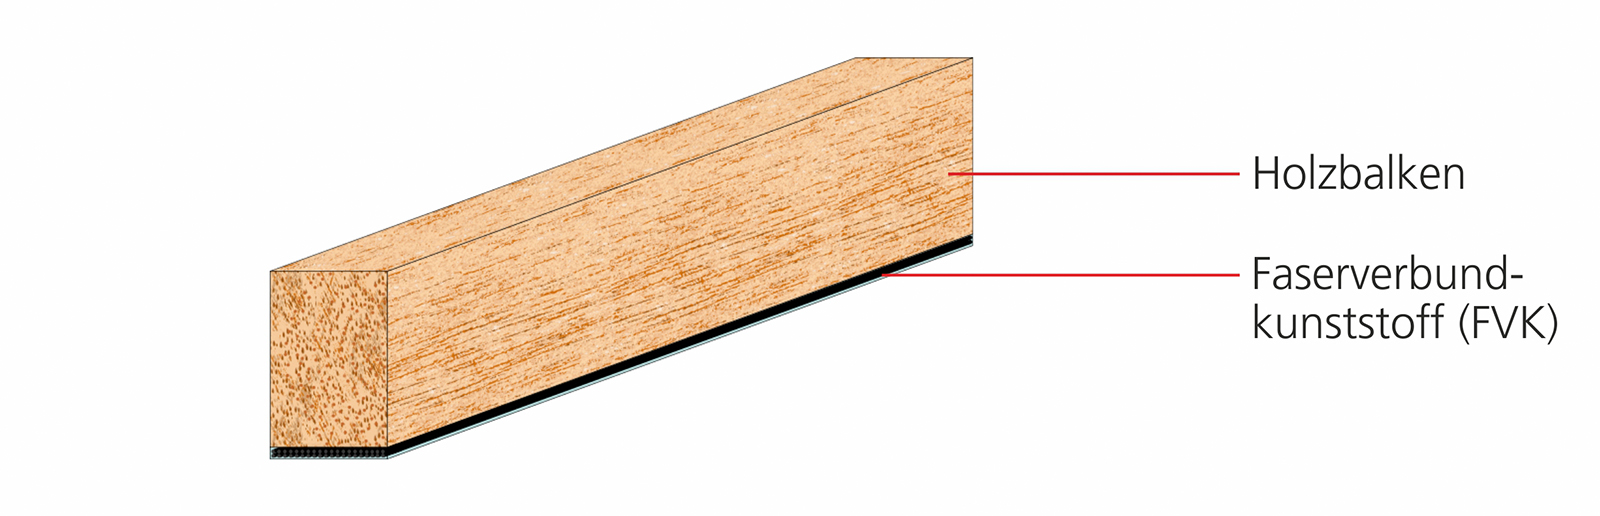 Beispielhafte Darstellung eines Holzbalkens mit Faserverbundkunststoff (FVK).